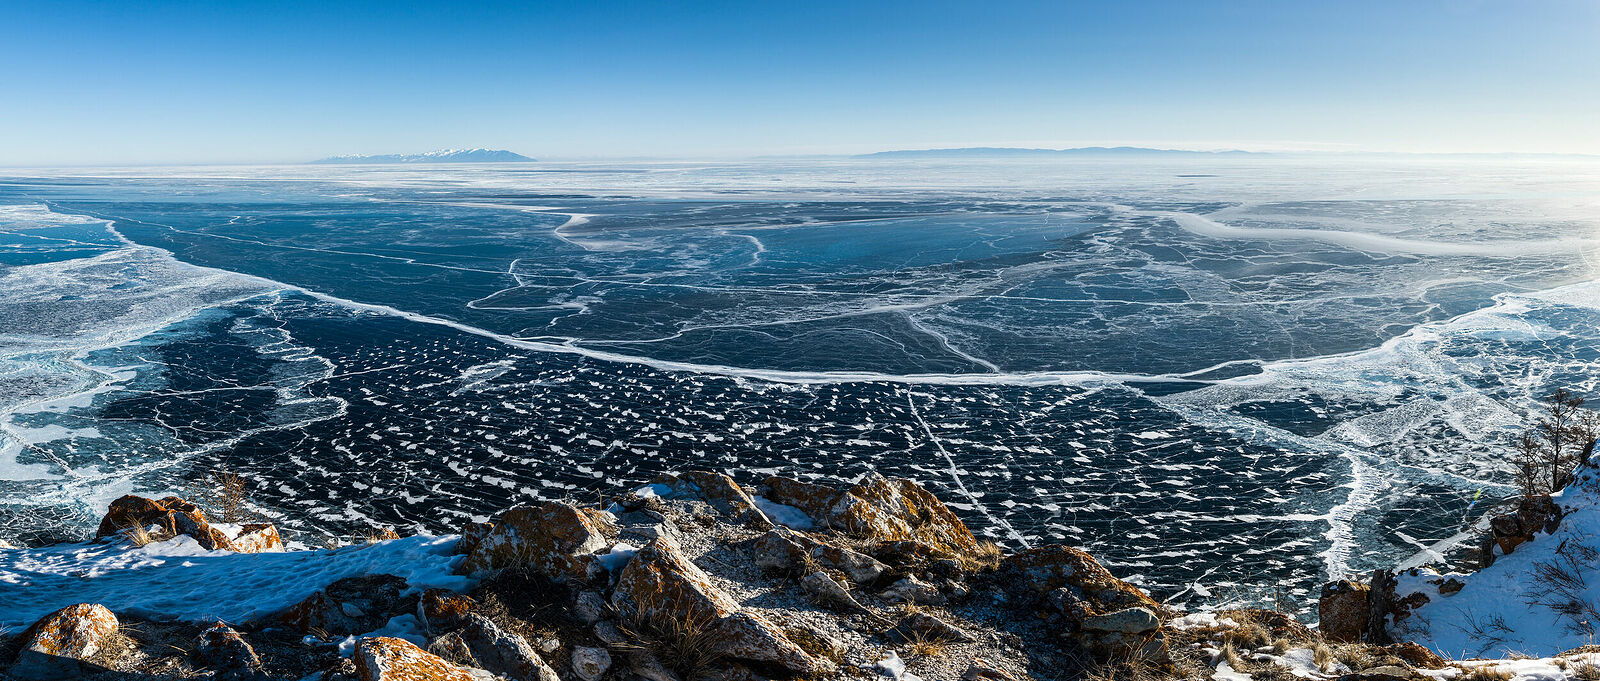 Панорама Байкала с горы Толгой около посёлка Узуры на северо-восточной оконечности острова Ольхон. Именно здесь находится наиболее глубоководная часть озера. Первый лёд в акватории. На дальнем плане - полуостров Святой Нос.